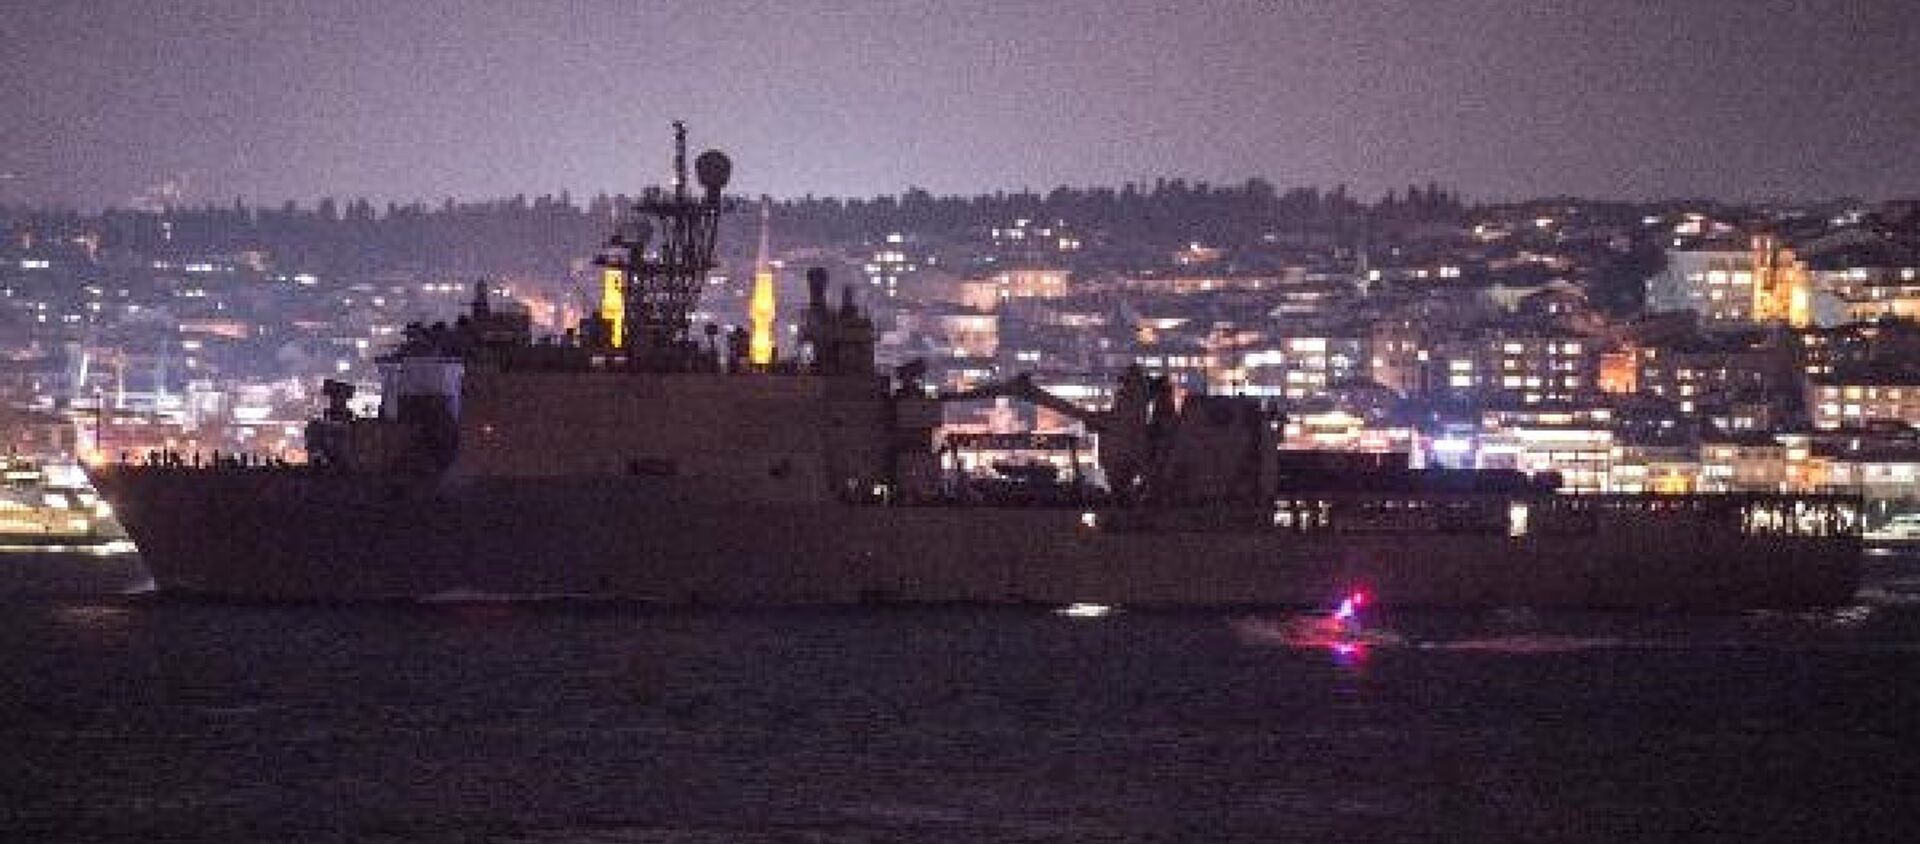  ABD Deniz Kuvvetleri'ne ait 186 metre uzunluğunda ki, USS Fort McHenry (LSD-43) adlı savaş gemisi, İstanbul Boğazı'ndan geçerek Karadeniz'e açıldı.   - Sputnik Türkiye, 1920, 08.04.2021